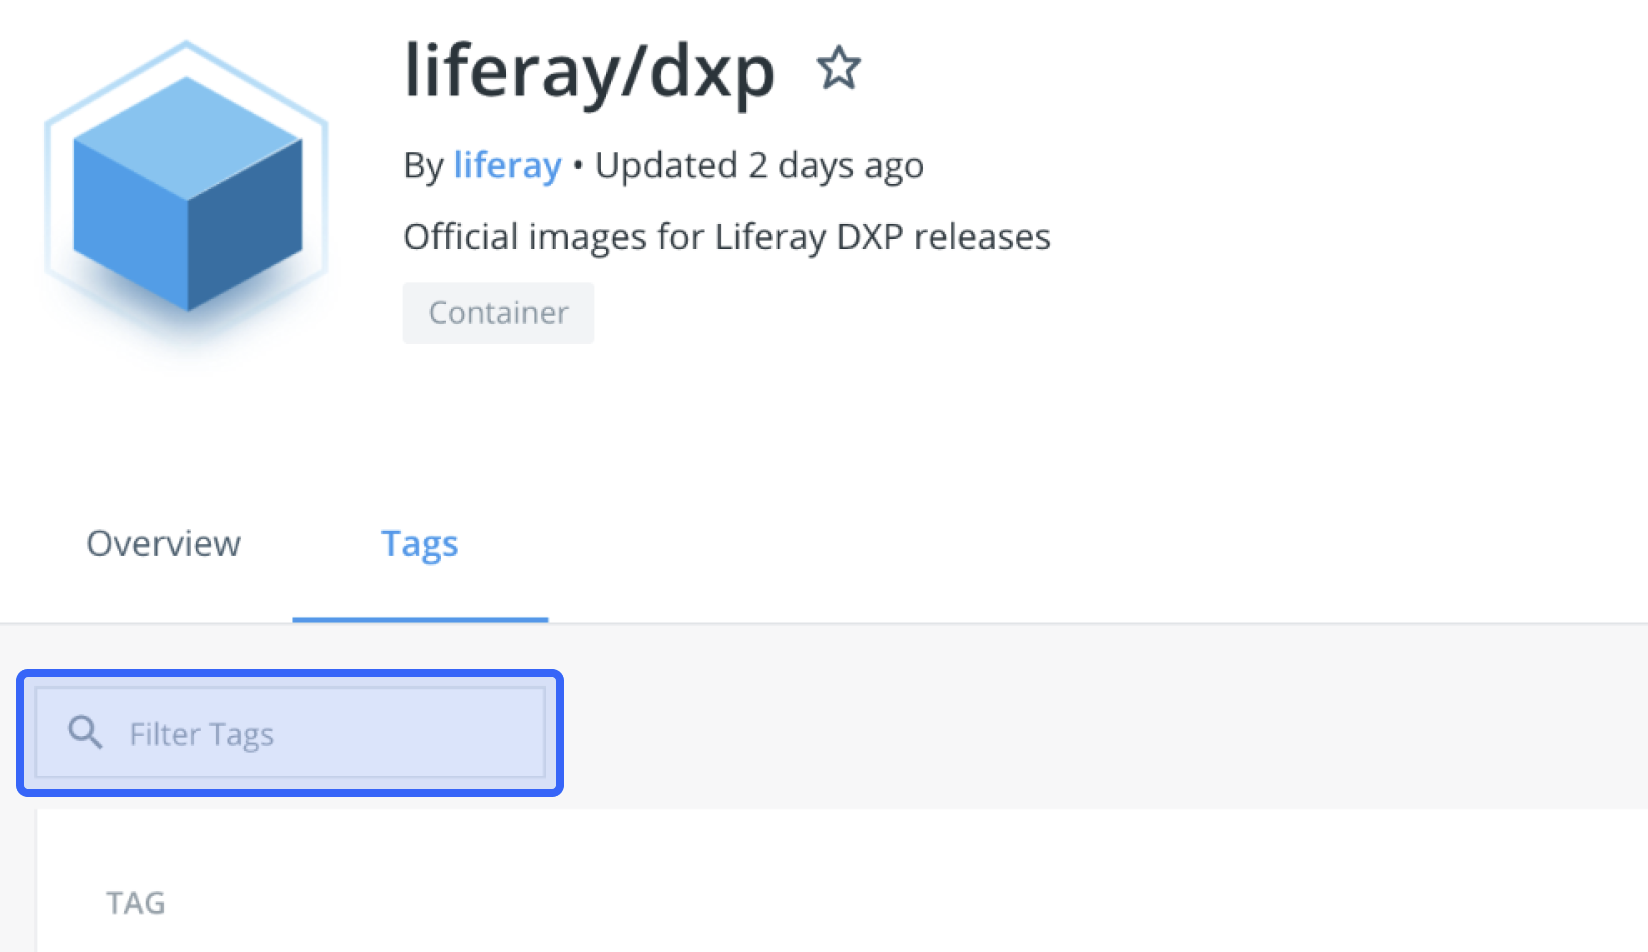 Filter Tagsフィールドを使用して、Liferay DXPイメージのリストをお探しのメジャーバージョンに絞り込みます。